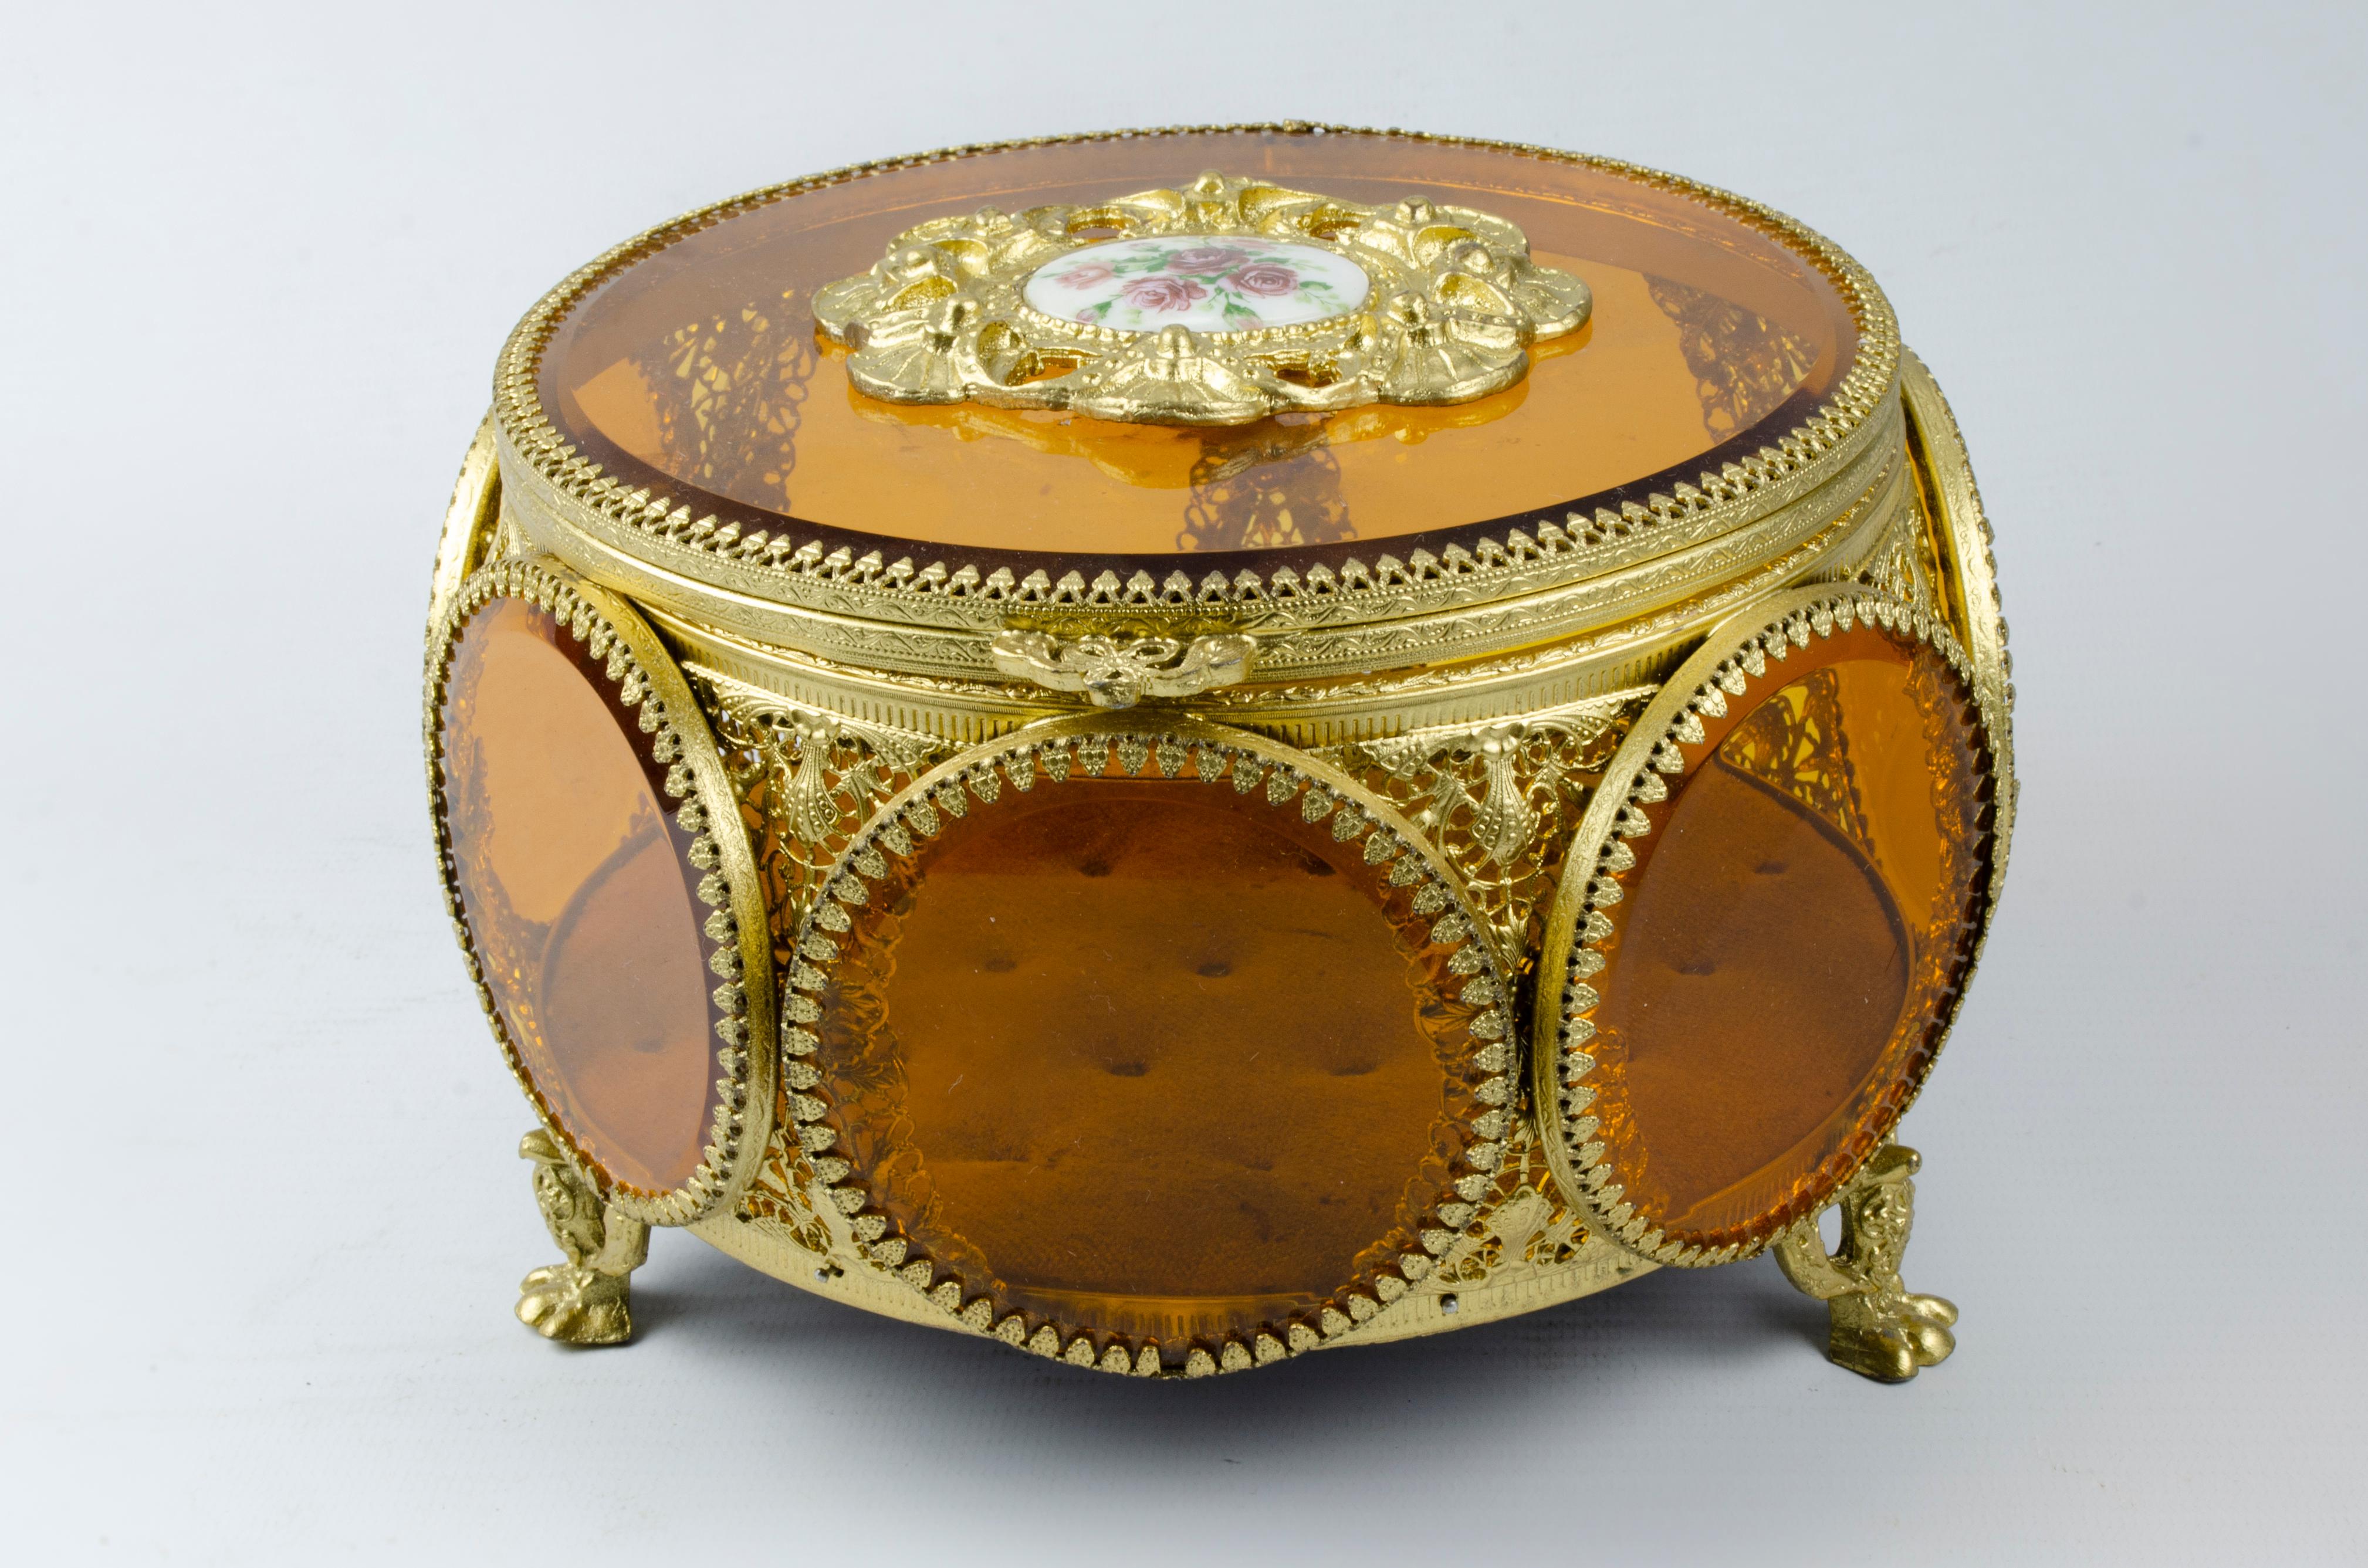 Boîte à bijoux française
MATERIAL : Bronze et cristal orange
Origine France Circa 1900
Patine dorée
parfaite condition
sur son couvercle, il y a une assiette en porcelaine.